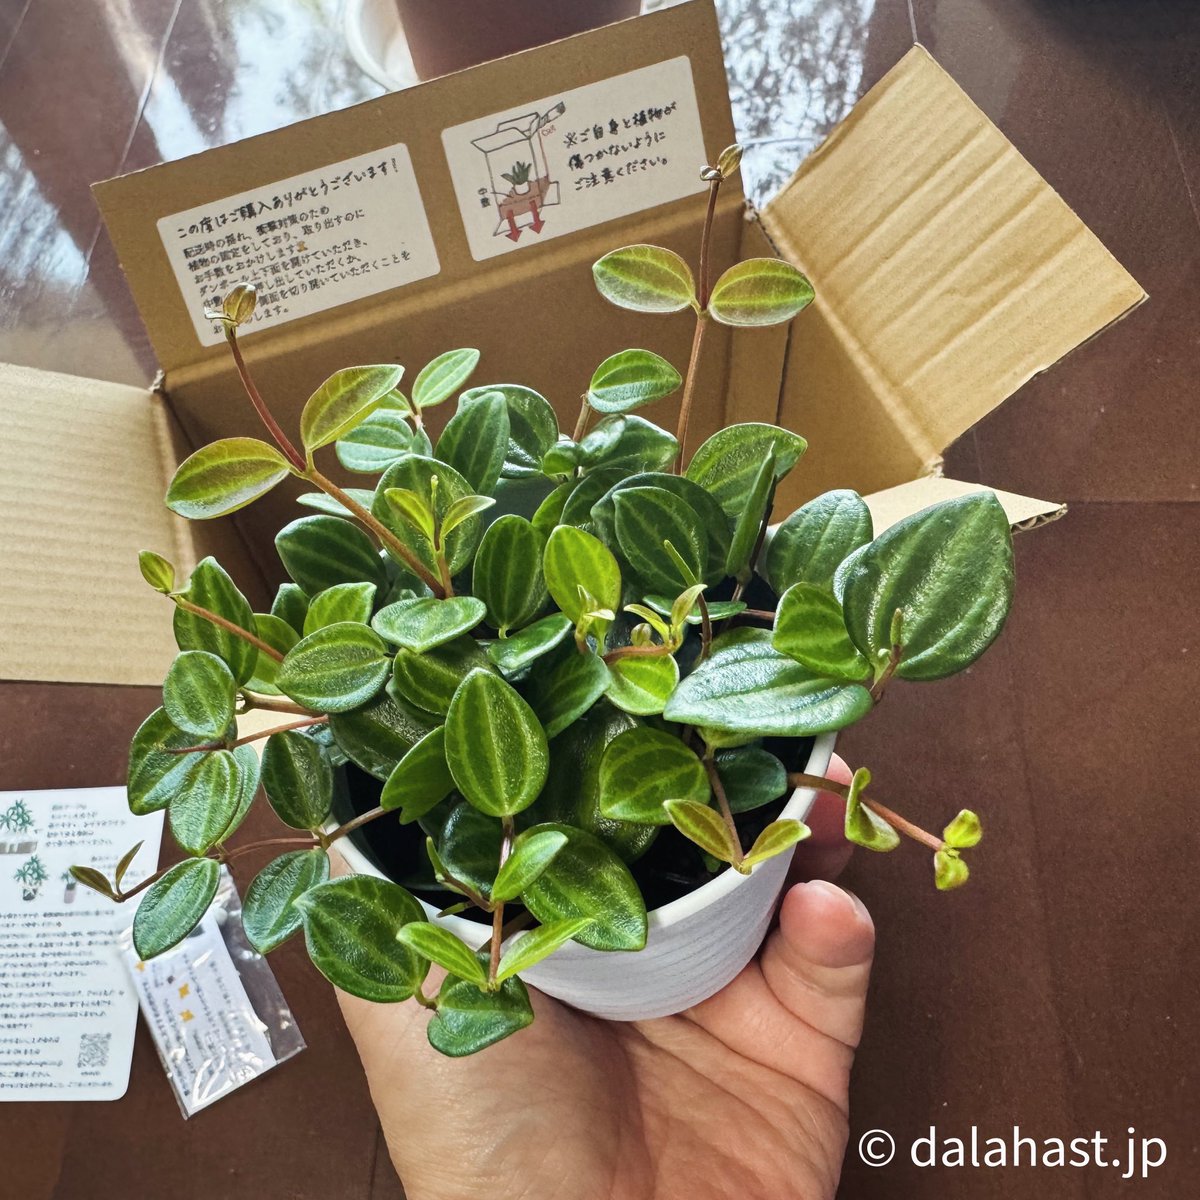 ina工藝さんで、ペペロミア・アングラータを購入。
ずっと探していたけど店舗では見つけられず、販売店さんのインスタなどをみて、ネットで初めて植物🪴買ったけど、梱包もしっかり丁寧で元気なぺぺが届きました。
また買いたい。
instagram.com/inakougei

#ina工藝　#inakougei #ペペロミア